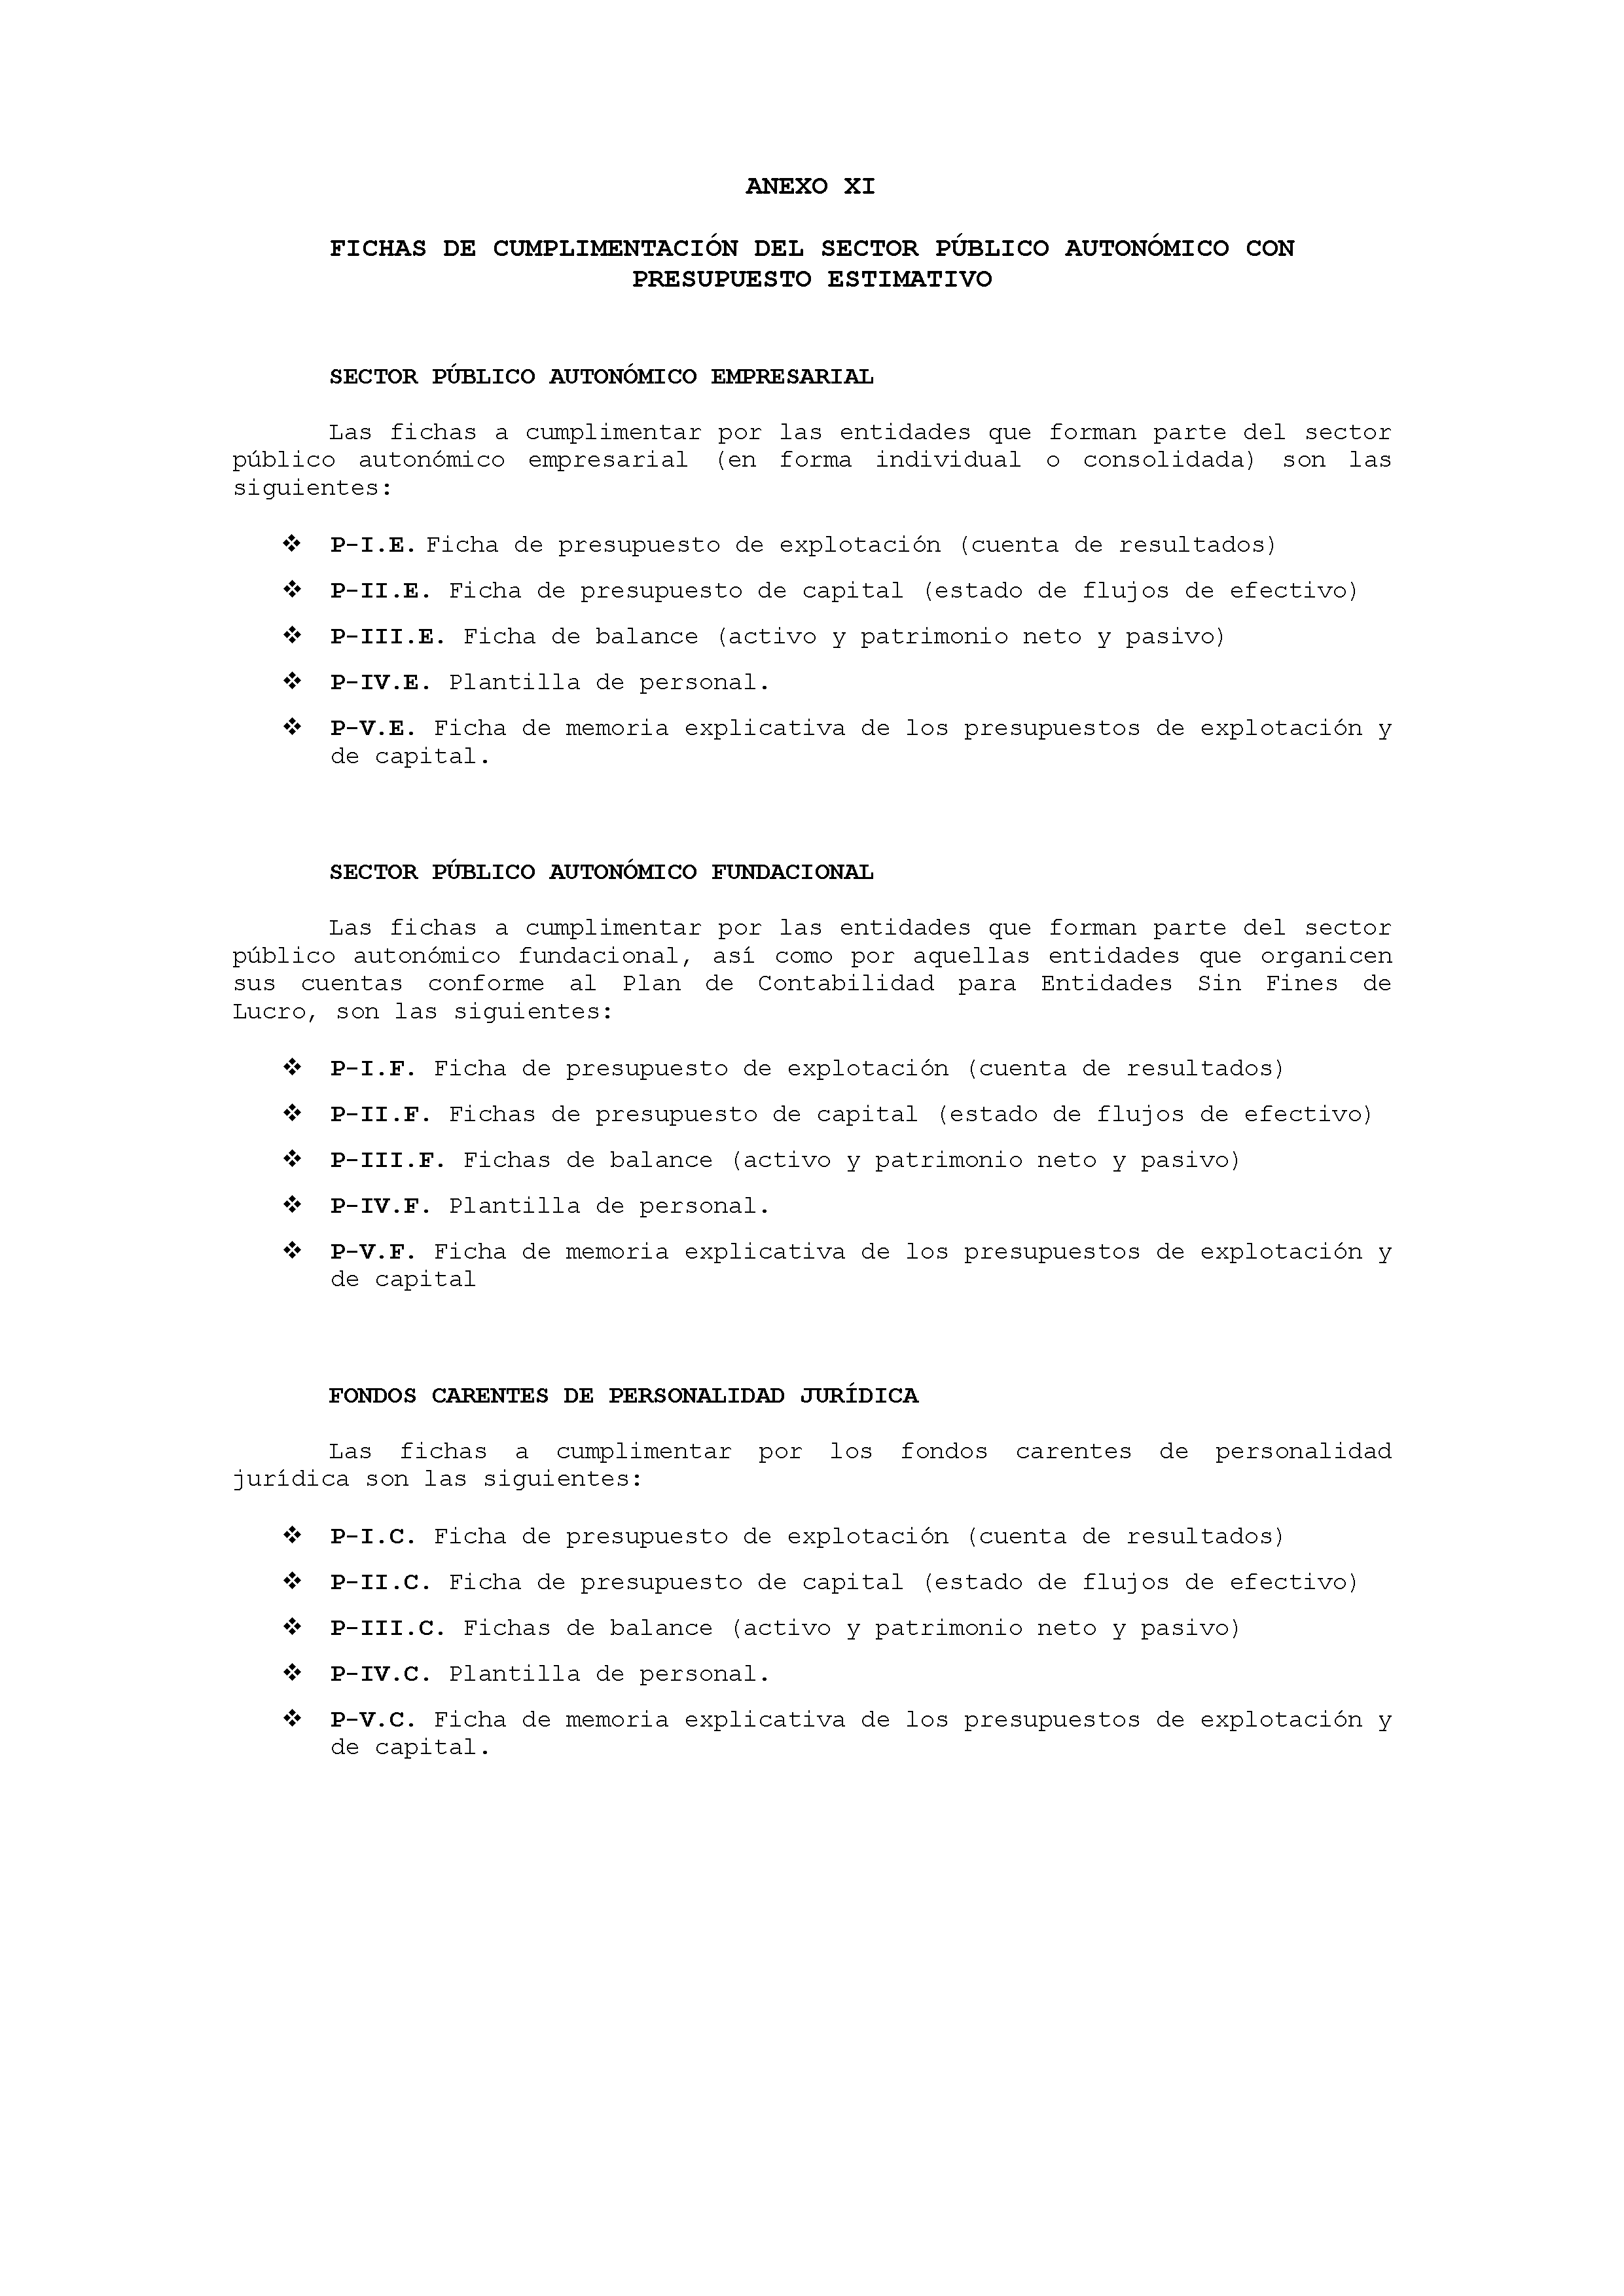 ANEXO XI FICHAS DE CUMPLIMENTACIÓN DEL SECTOR PÚBLICO AUTONÓMICO CON PRESUPUESTO ESTIMATIVO Pag 1